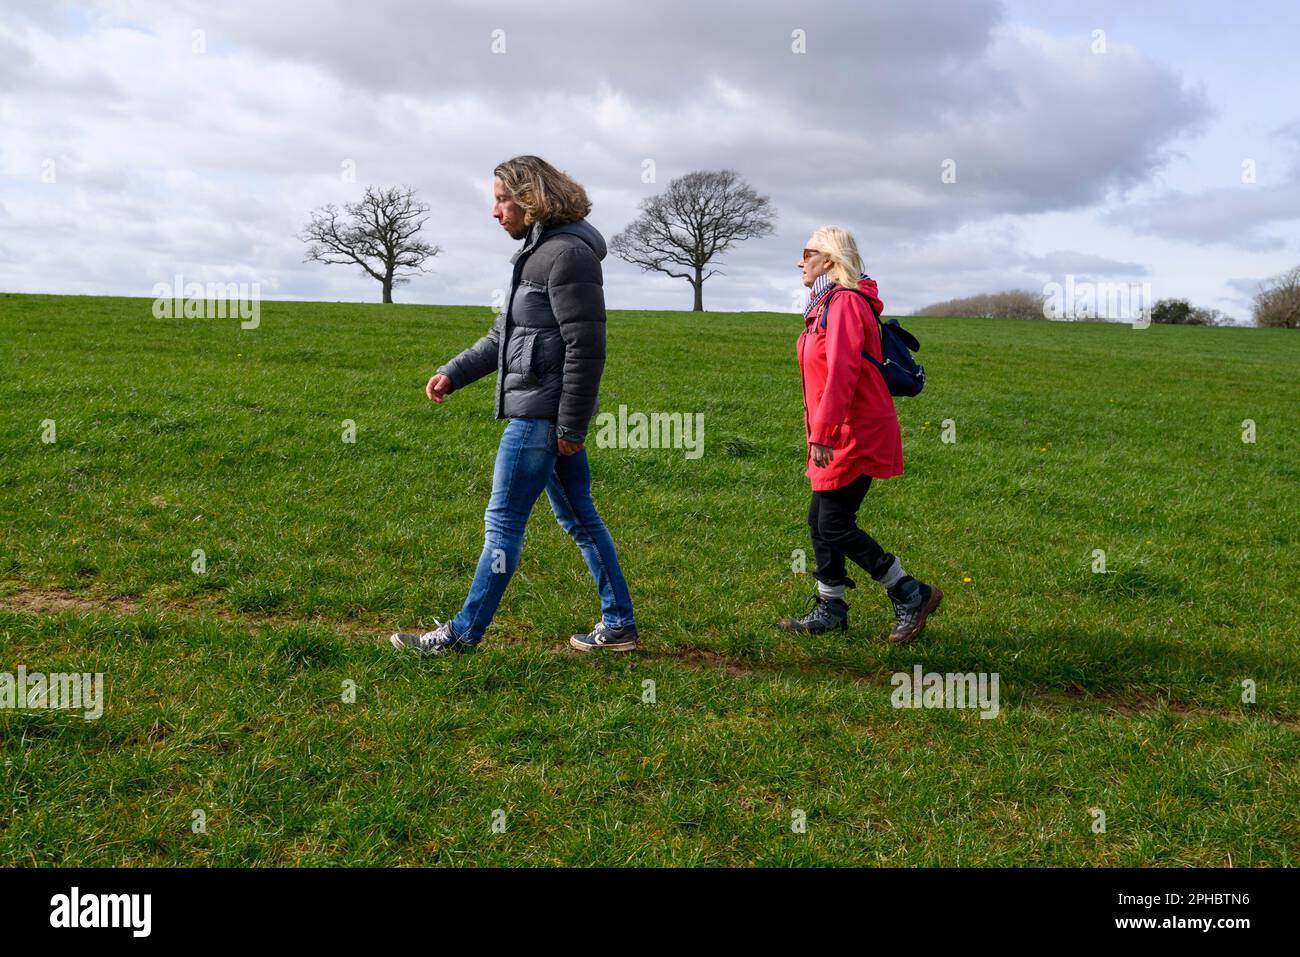 Man and woman walking across a field, walking in a field, man in front Stock Photo